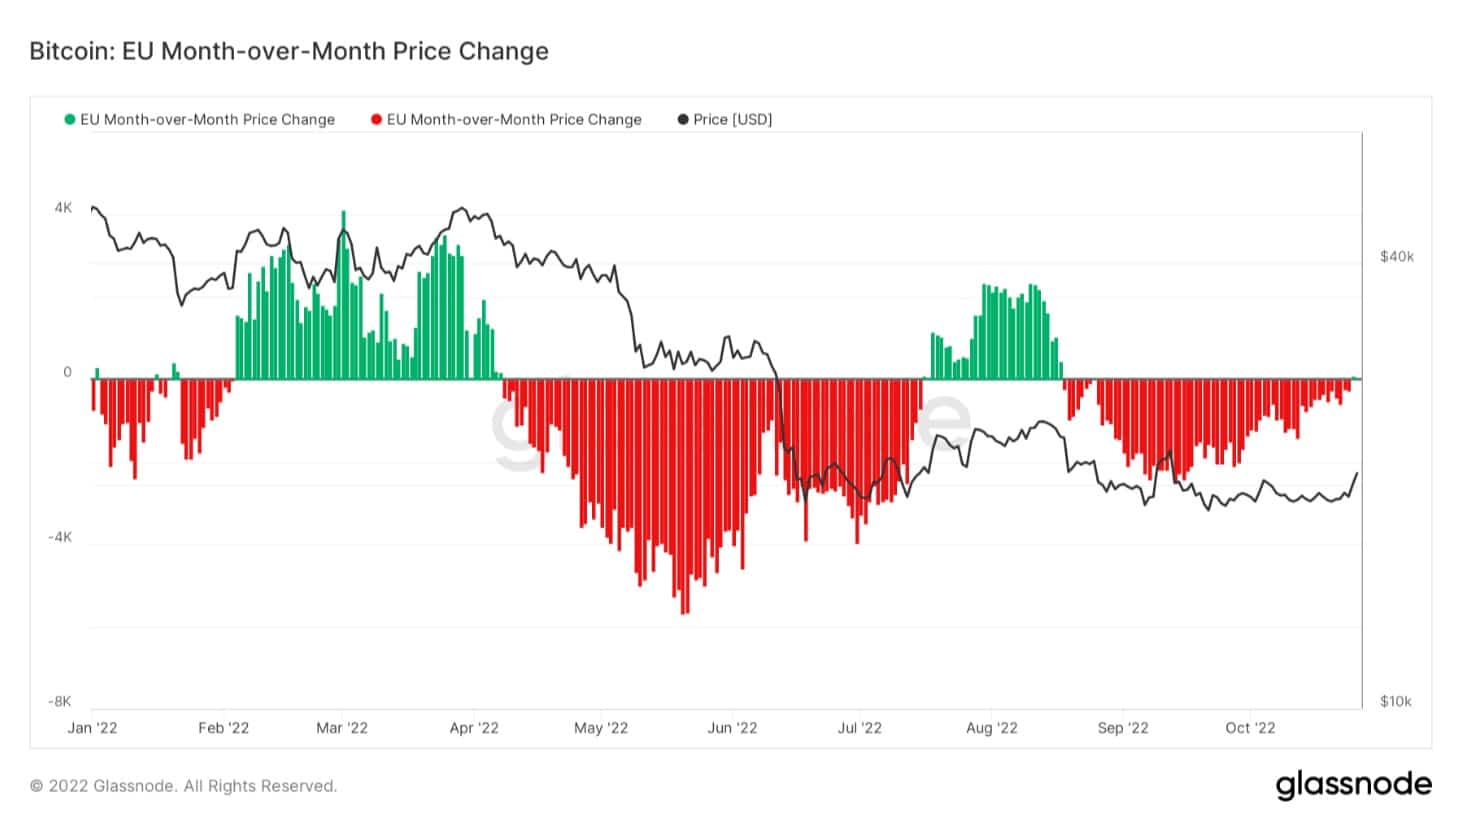 Graf zobrazující změnu ceny MoM v E.U. pro Bitcoin (Zdroj: Glassnode)